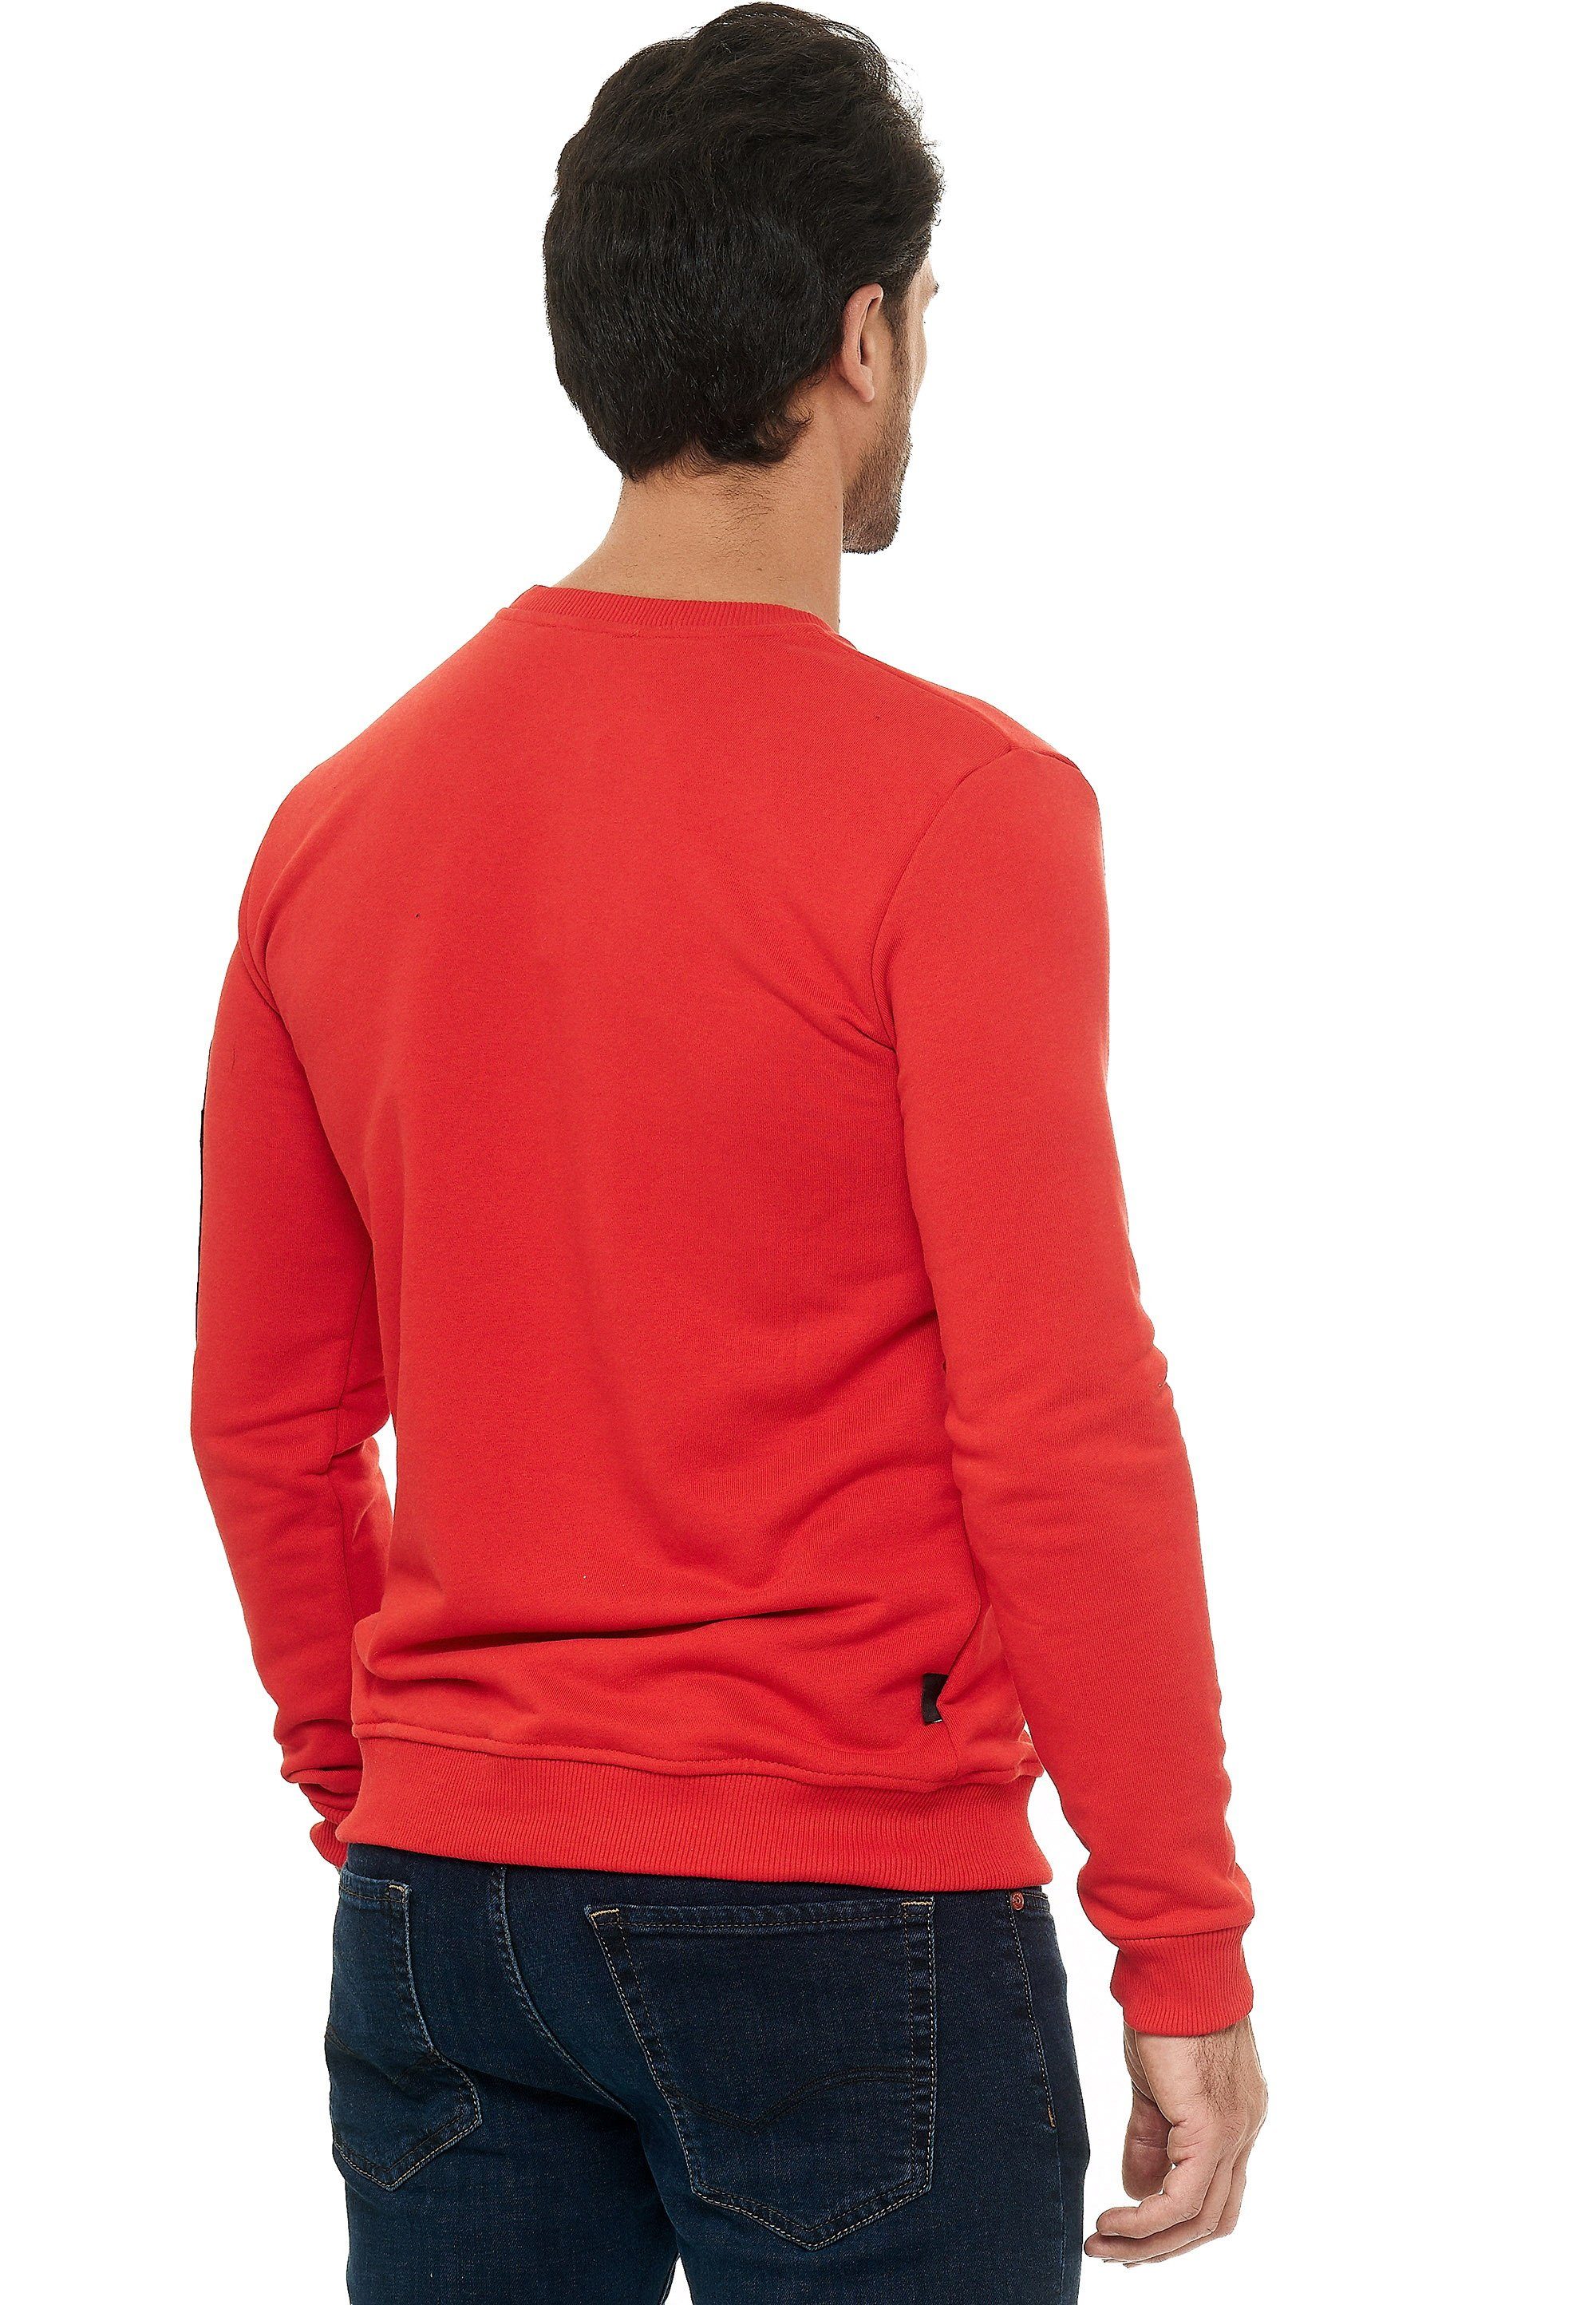 stylischen RedBridge und McKinney mit Patches rot Prints Sweatshirt